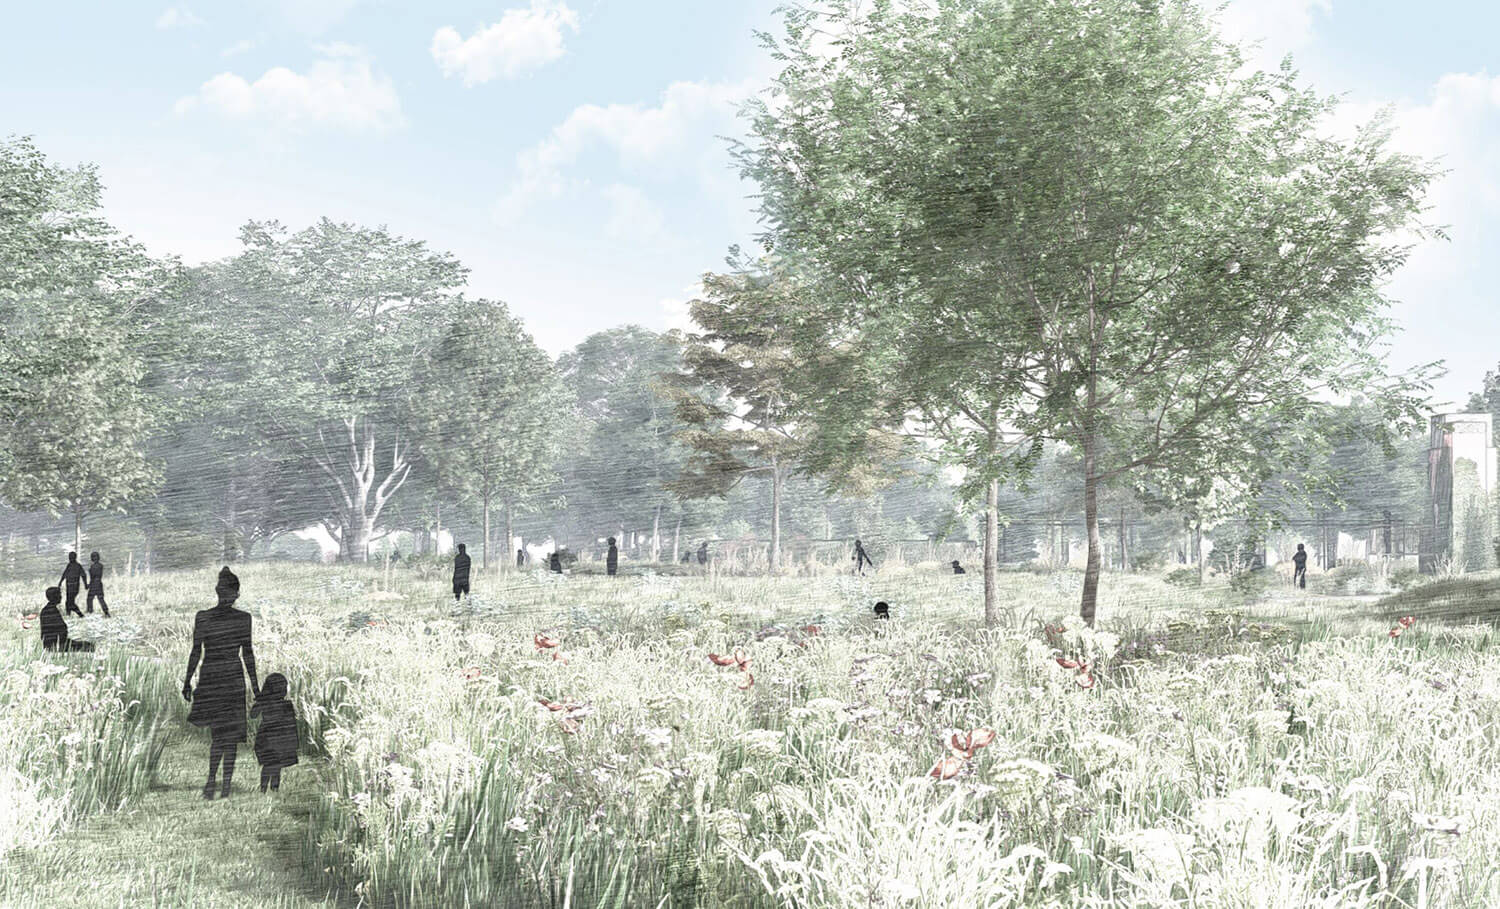 Concept art of the new garden meadow